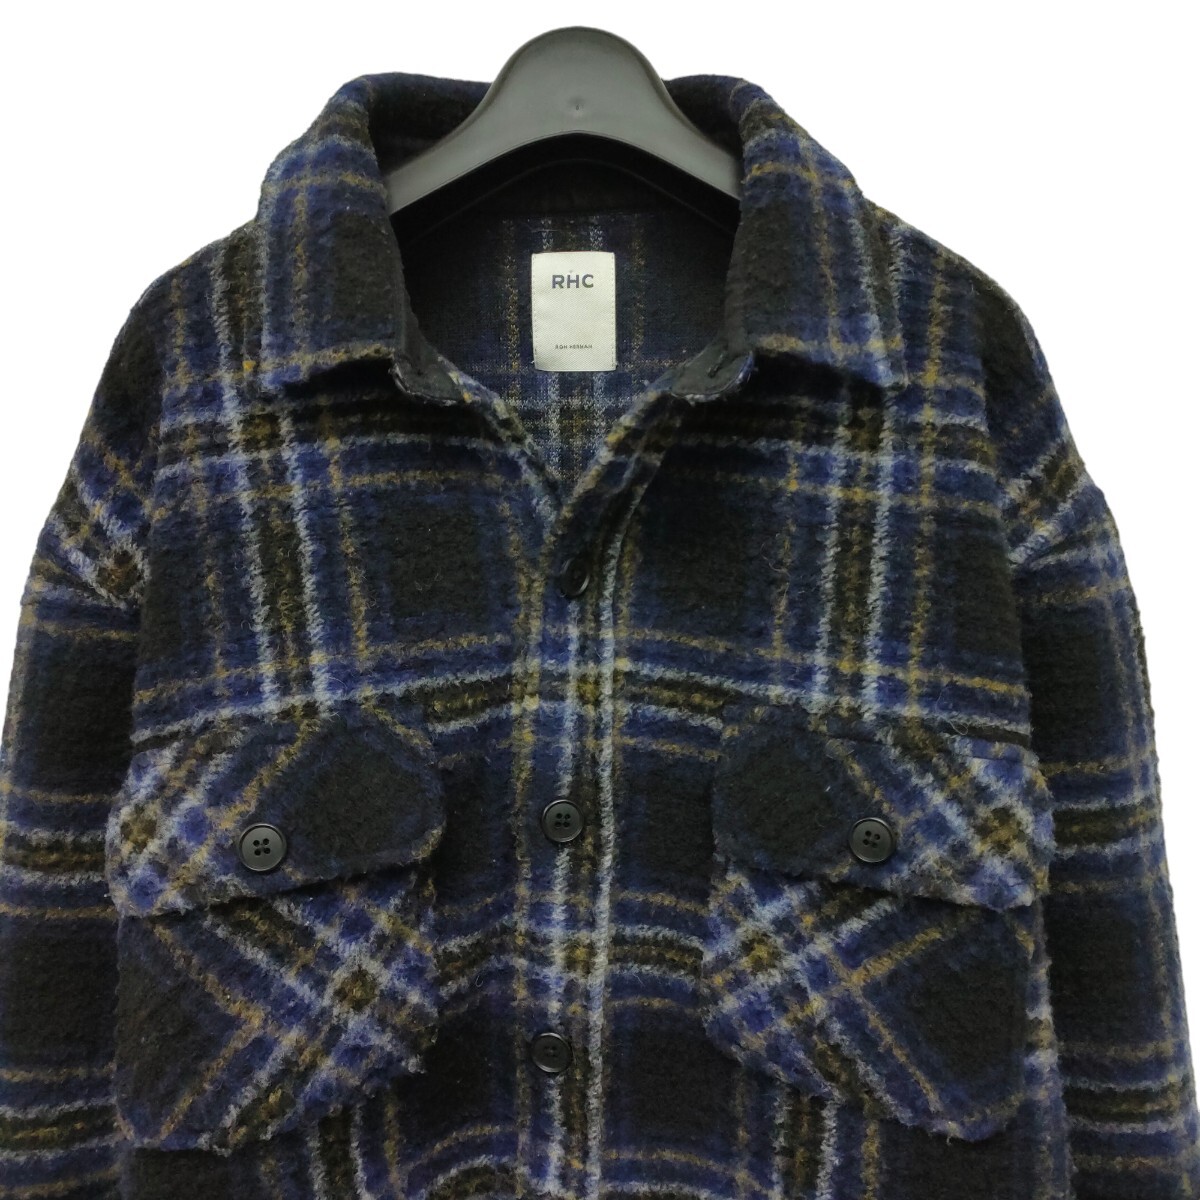 RHC Ron Herman / ロンハーマン メンズ ウール混 厚手ボタンシャツジャケット 寒色系 チェック柄 Lサイズ カッコいい I-3671_画像2